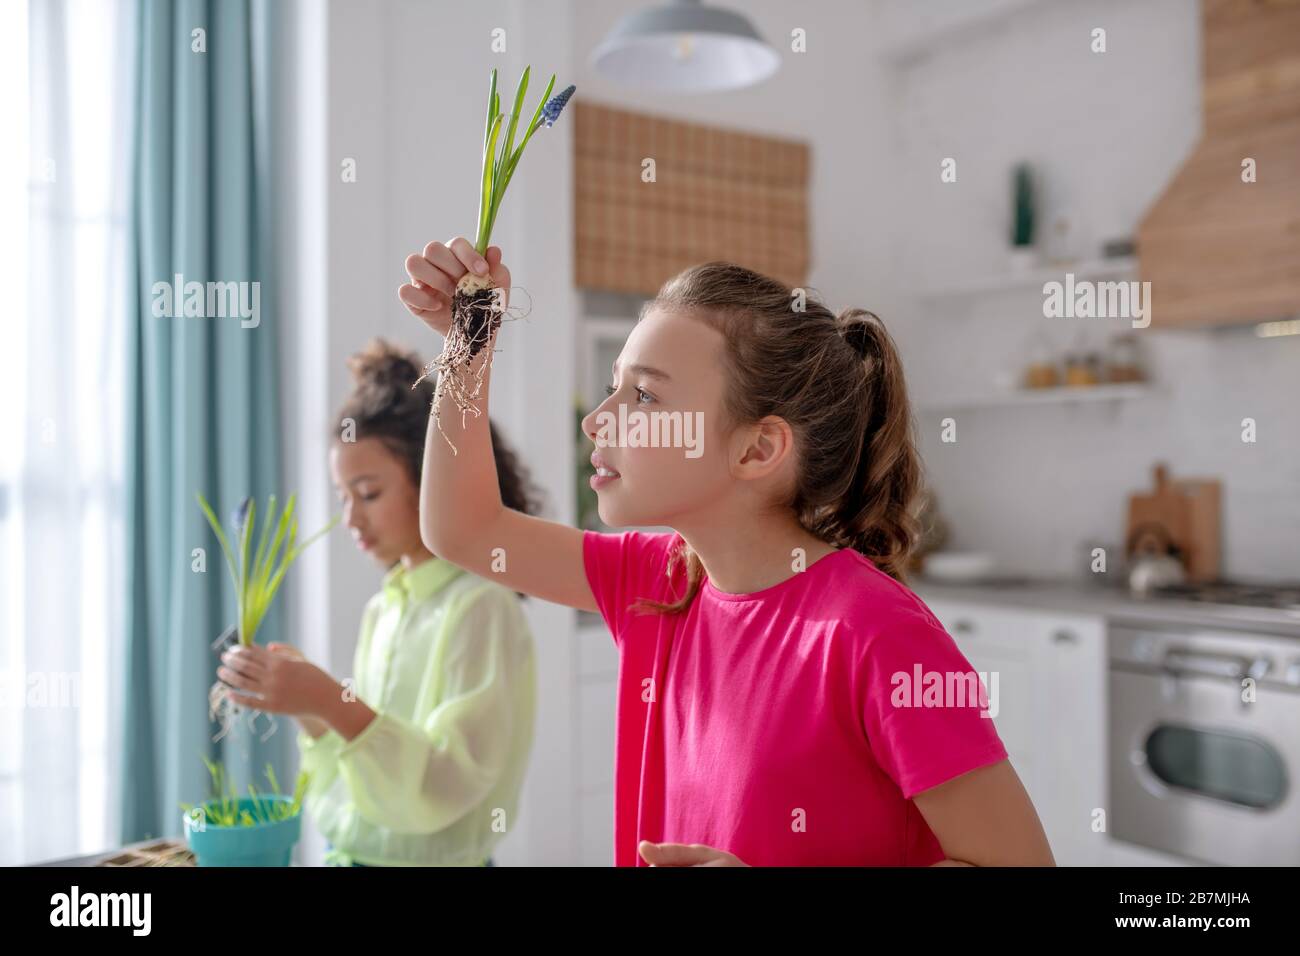 Mädchen in einer rosafarbenen Bluse mit erhobener Hand und Pflanzen. Stockfoto